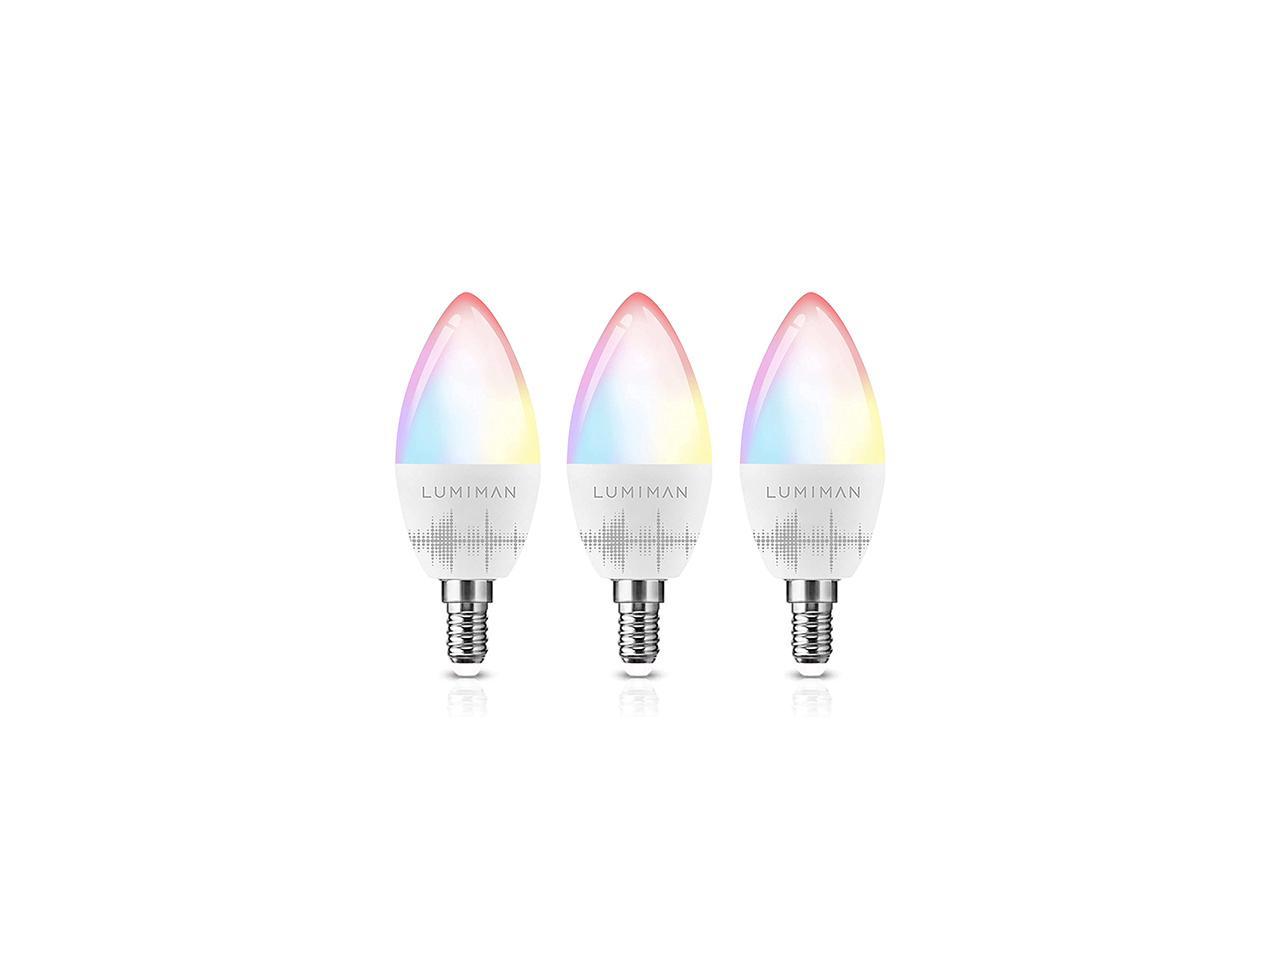 LED Candelabra Bulbs E12 Base, LUMIMAN Smart Light Bulbs Small Base